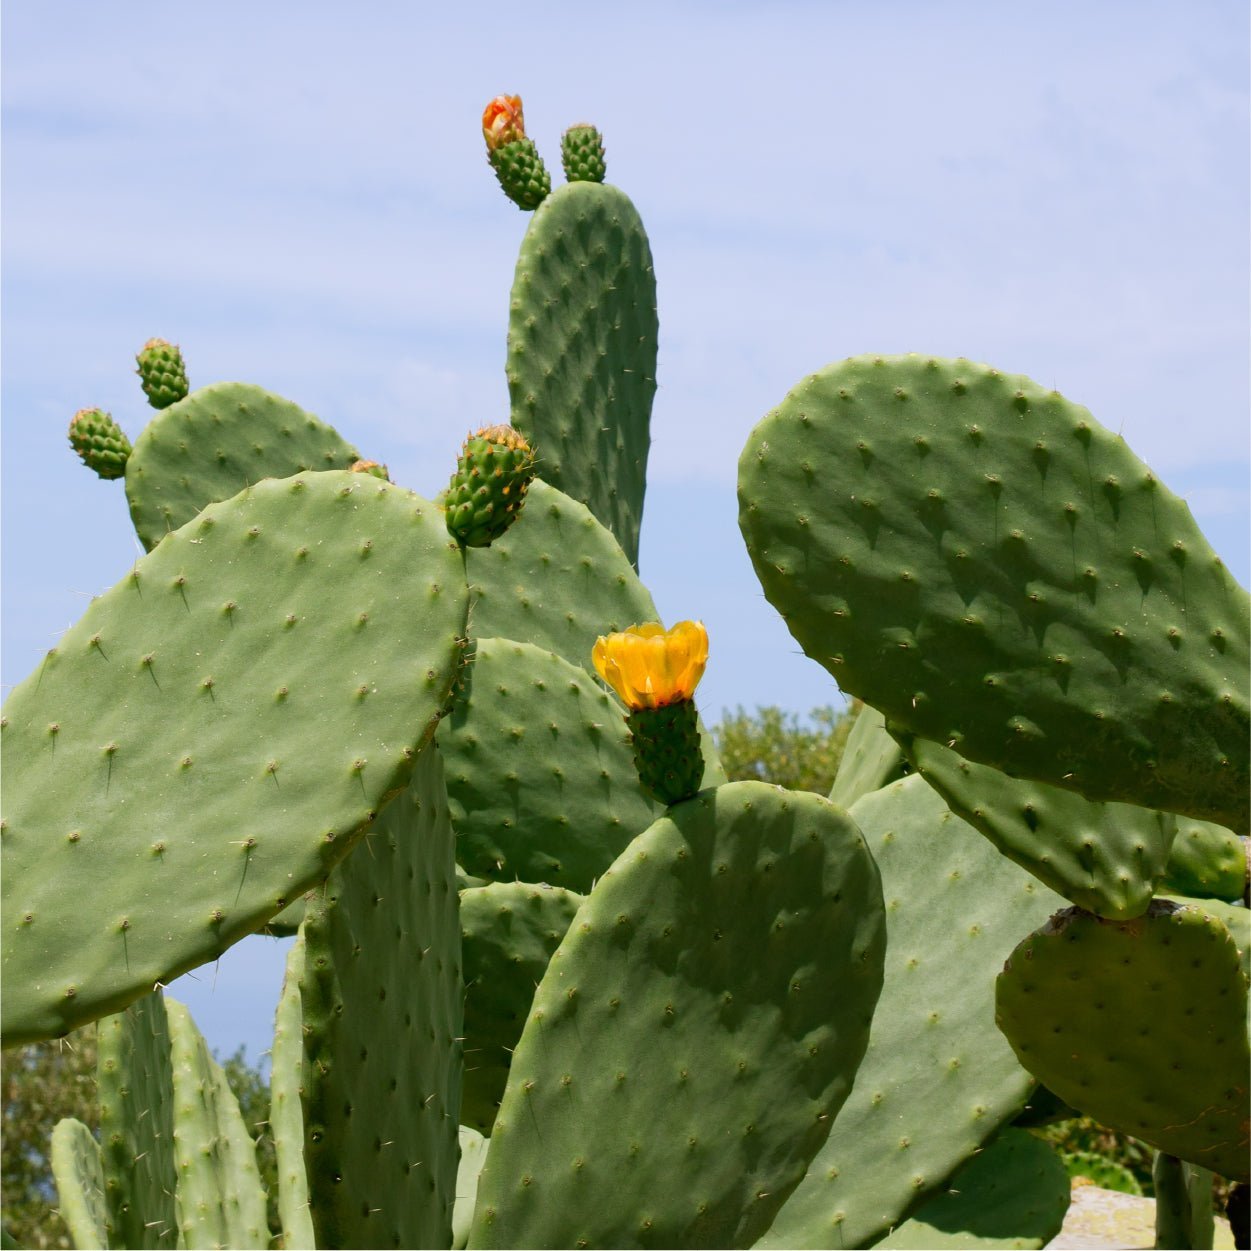 LICORNE Vegan Cactus Deep Moist Facial Cream LICORNE